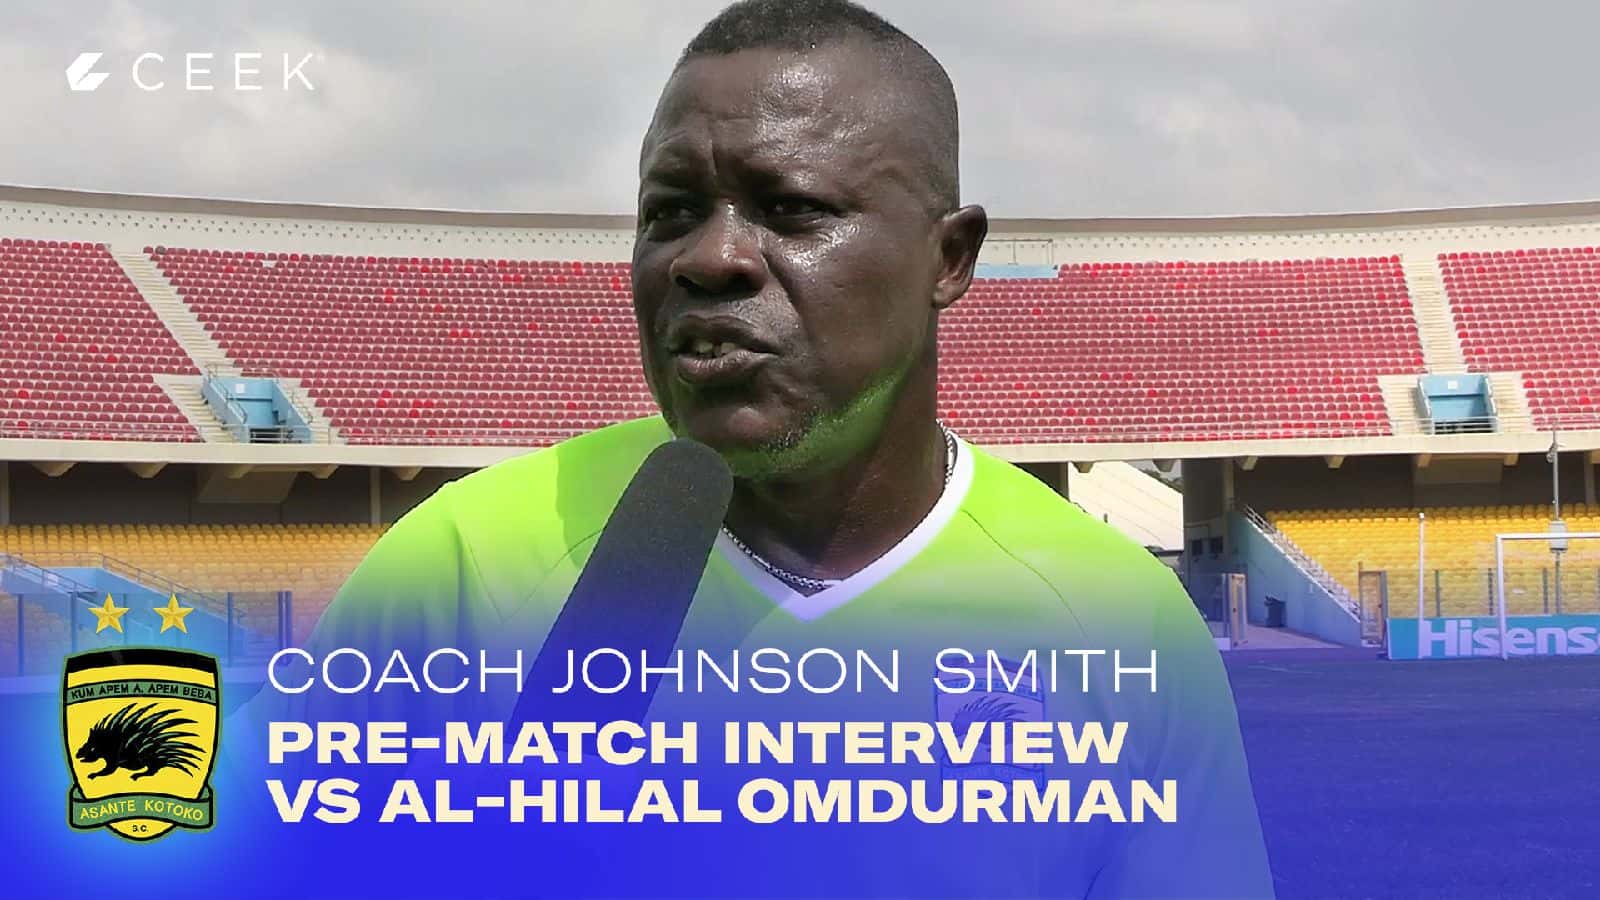 Asante Kotoko Coach Johnson Smith - Pre-match interview vrs Al-Hilal Omdurman